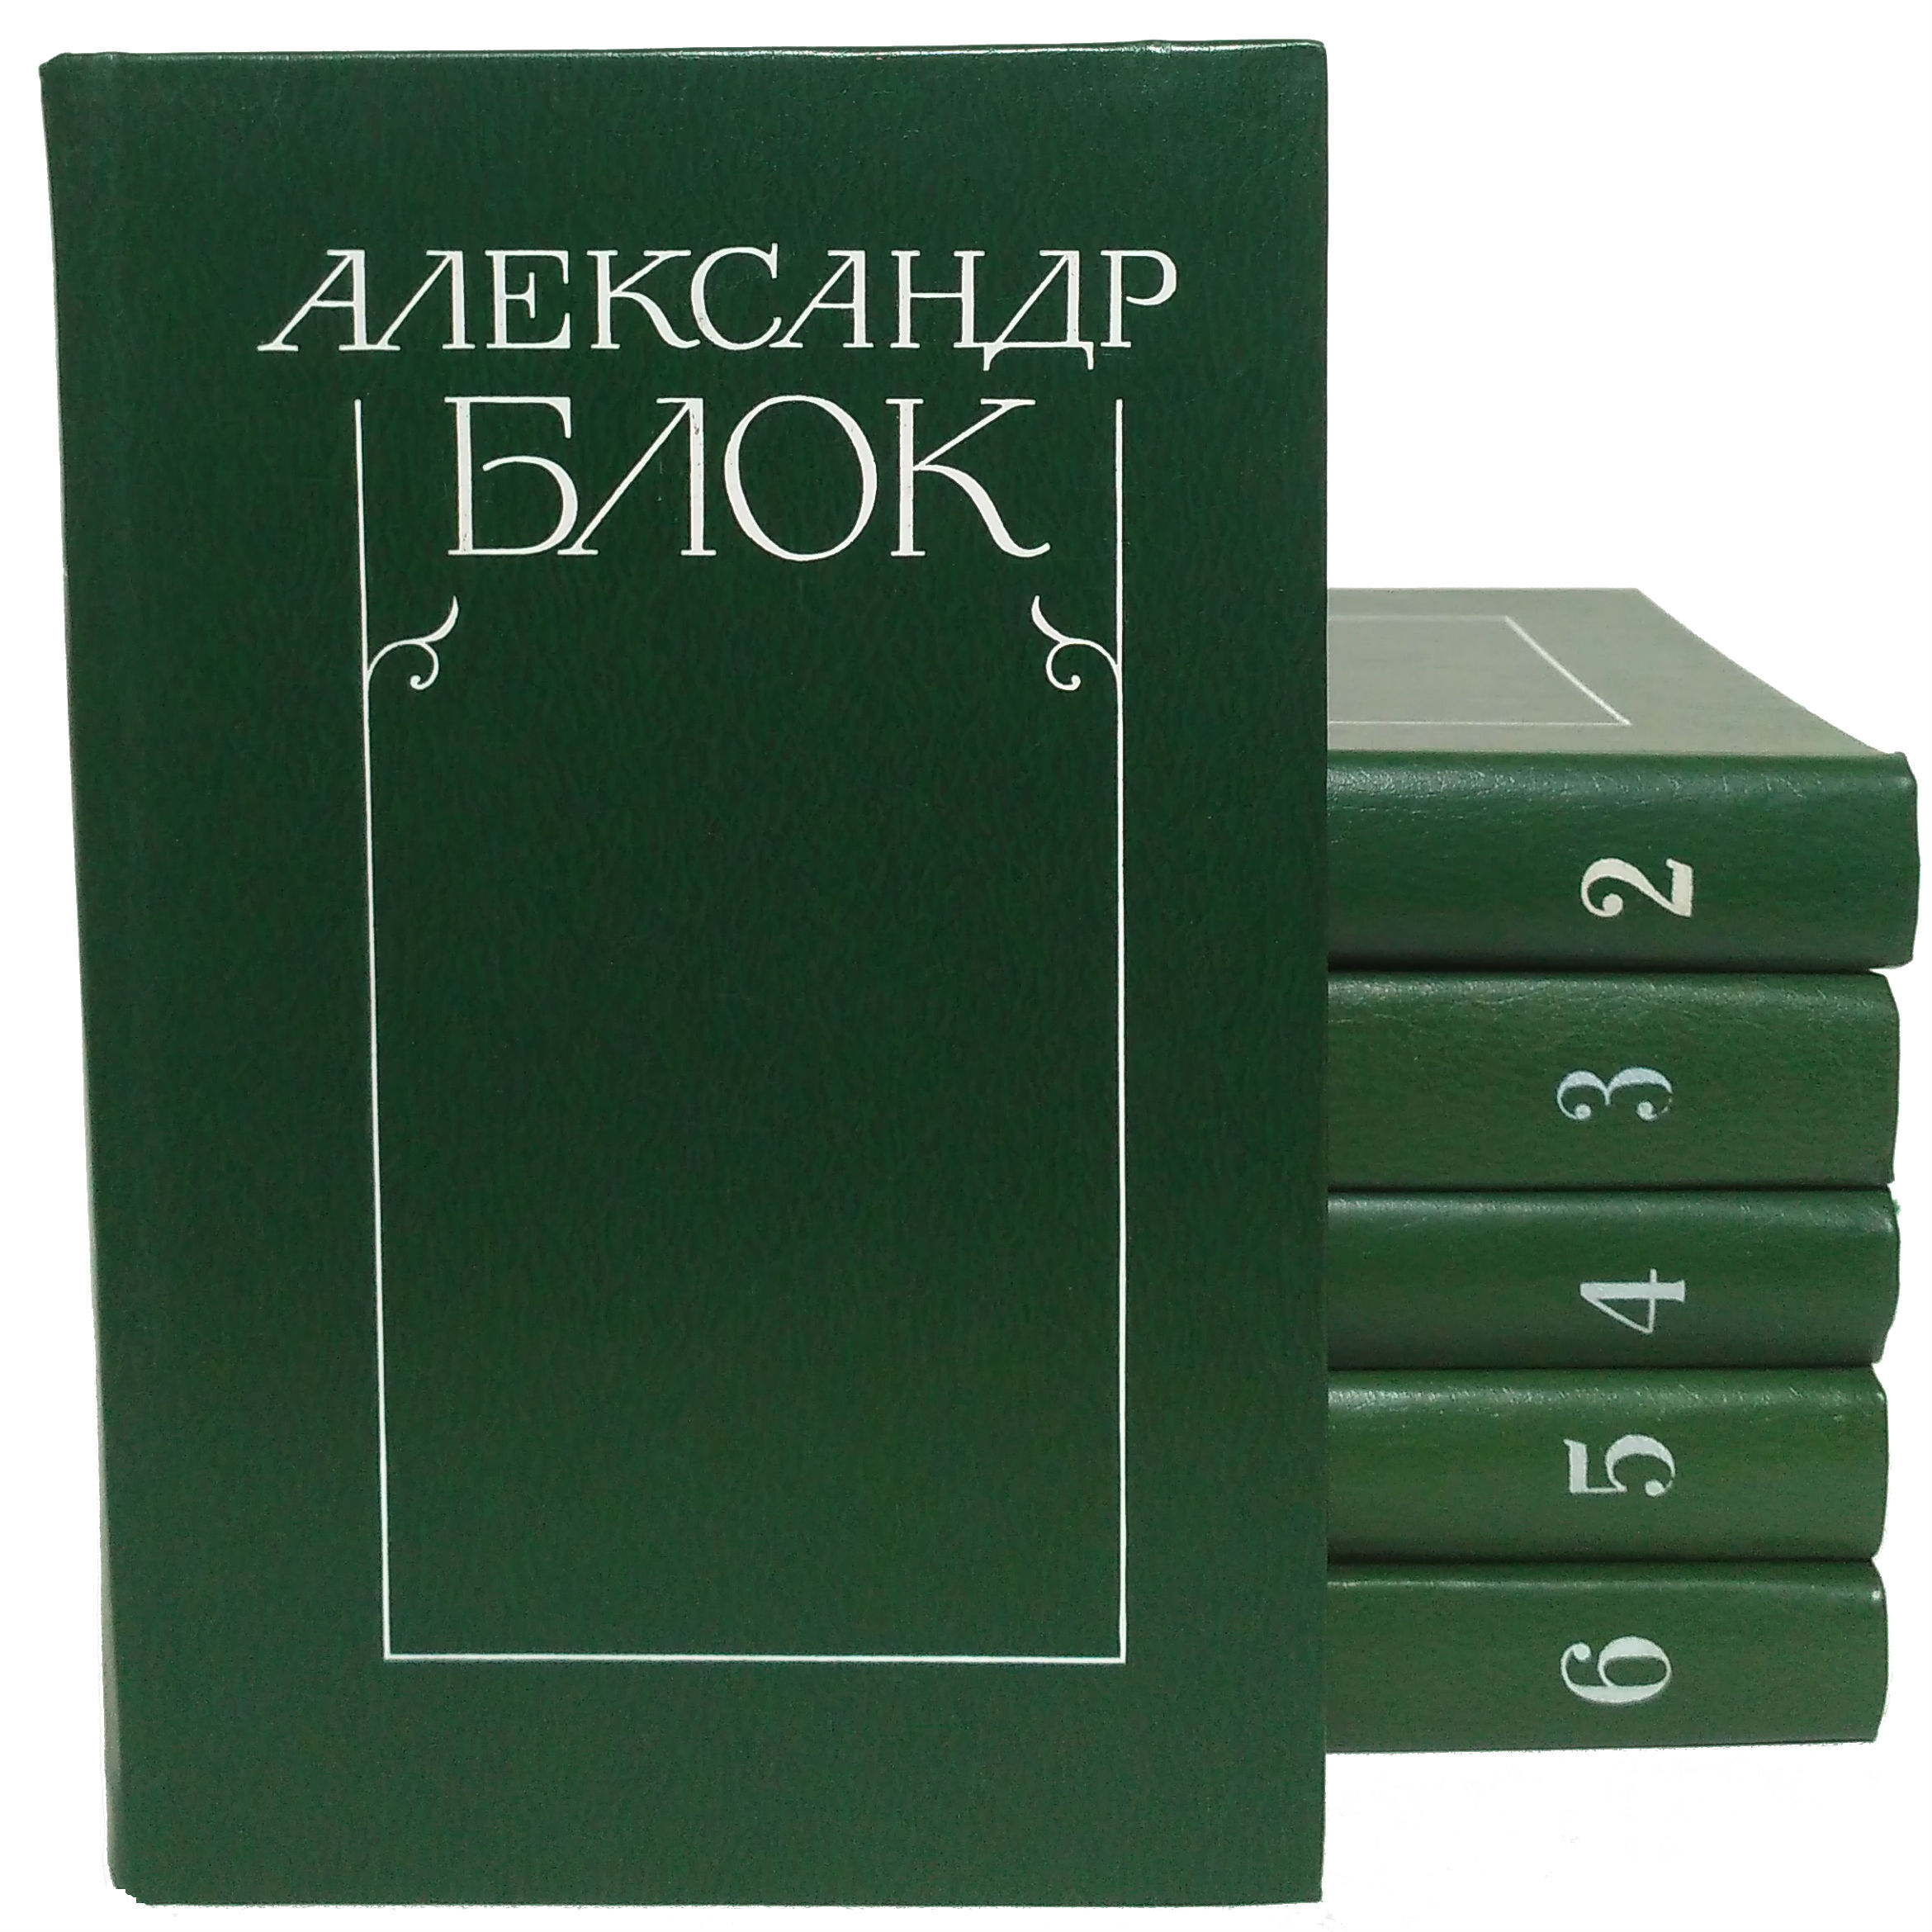 Александр блок собрание сочинений в 6 томах 1980